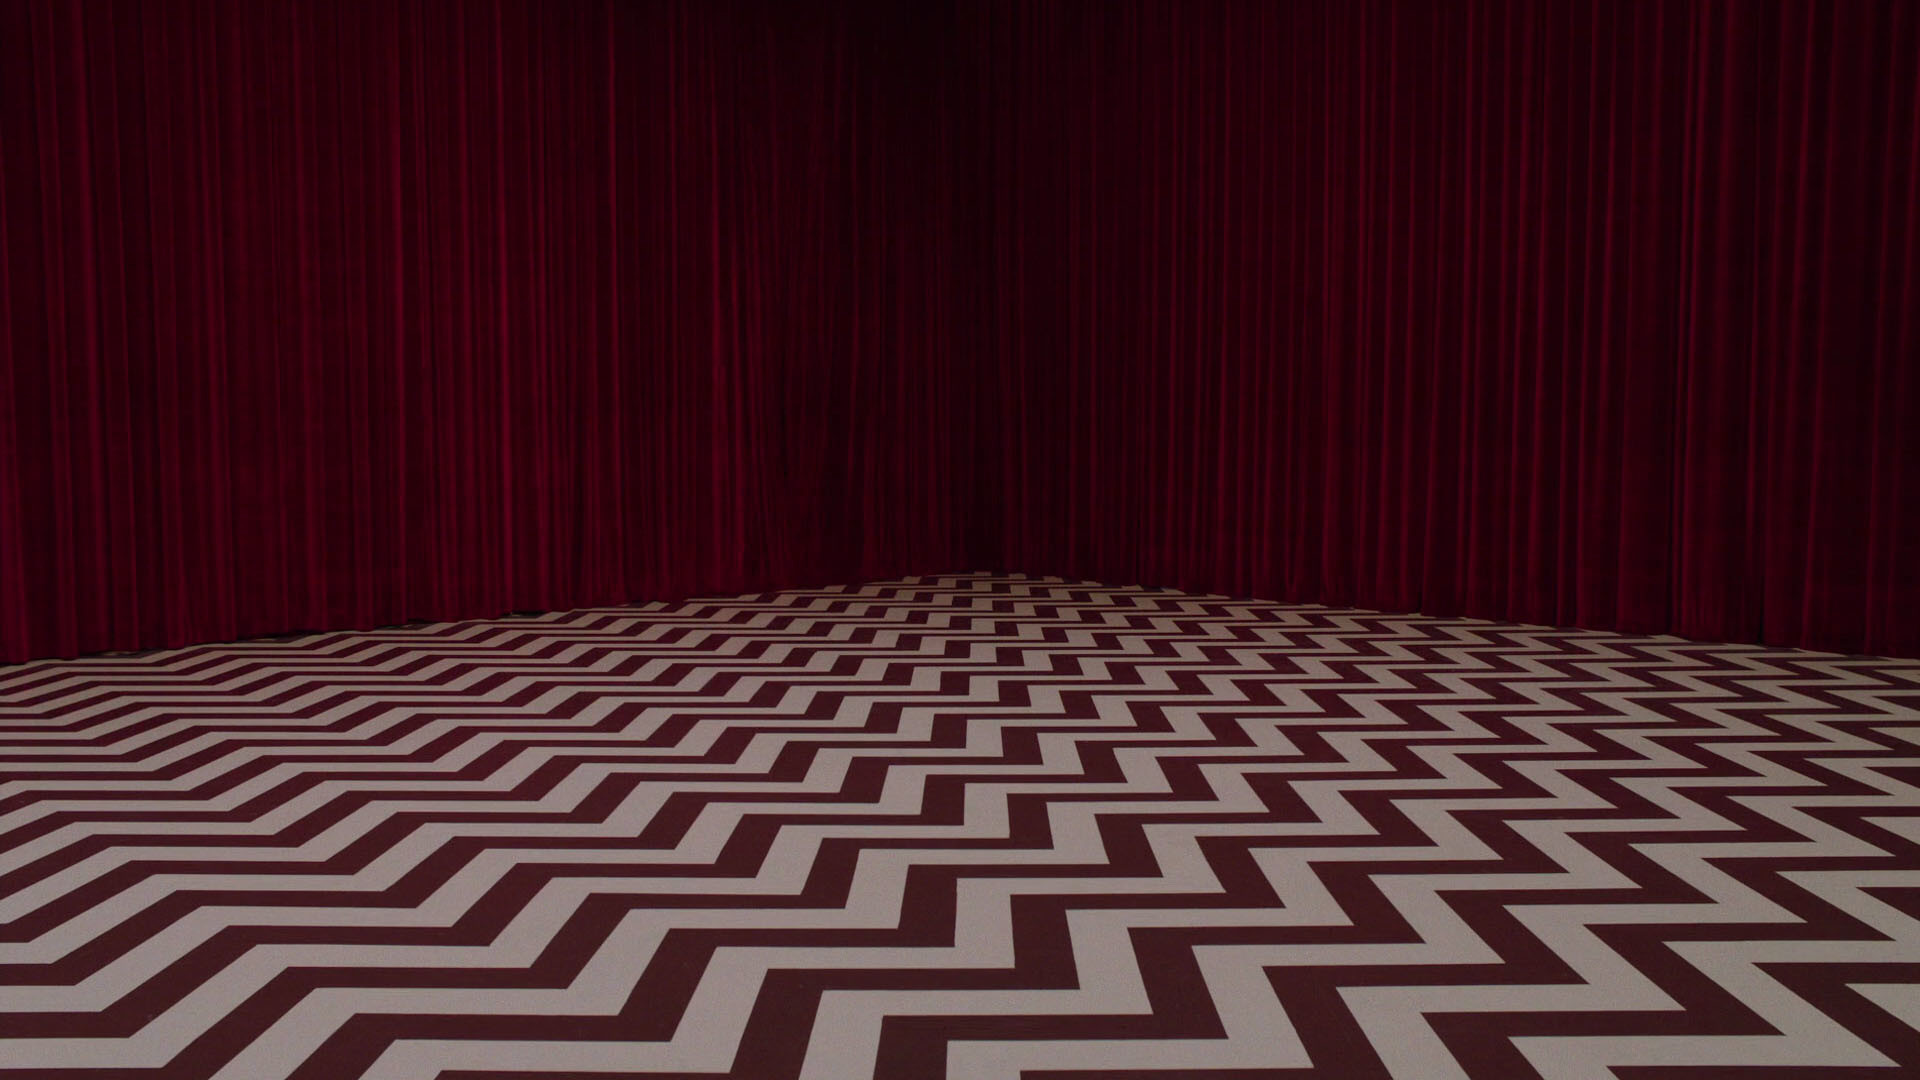 twin peaks wallpaper,red,brown,pattern,floor,maroon